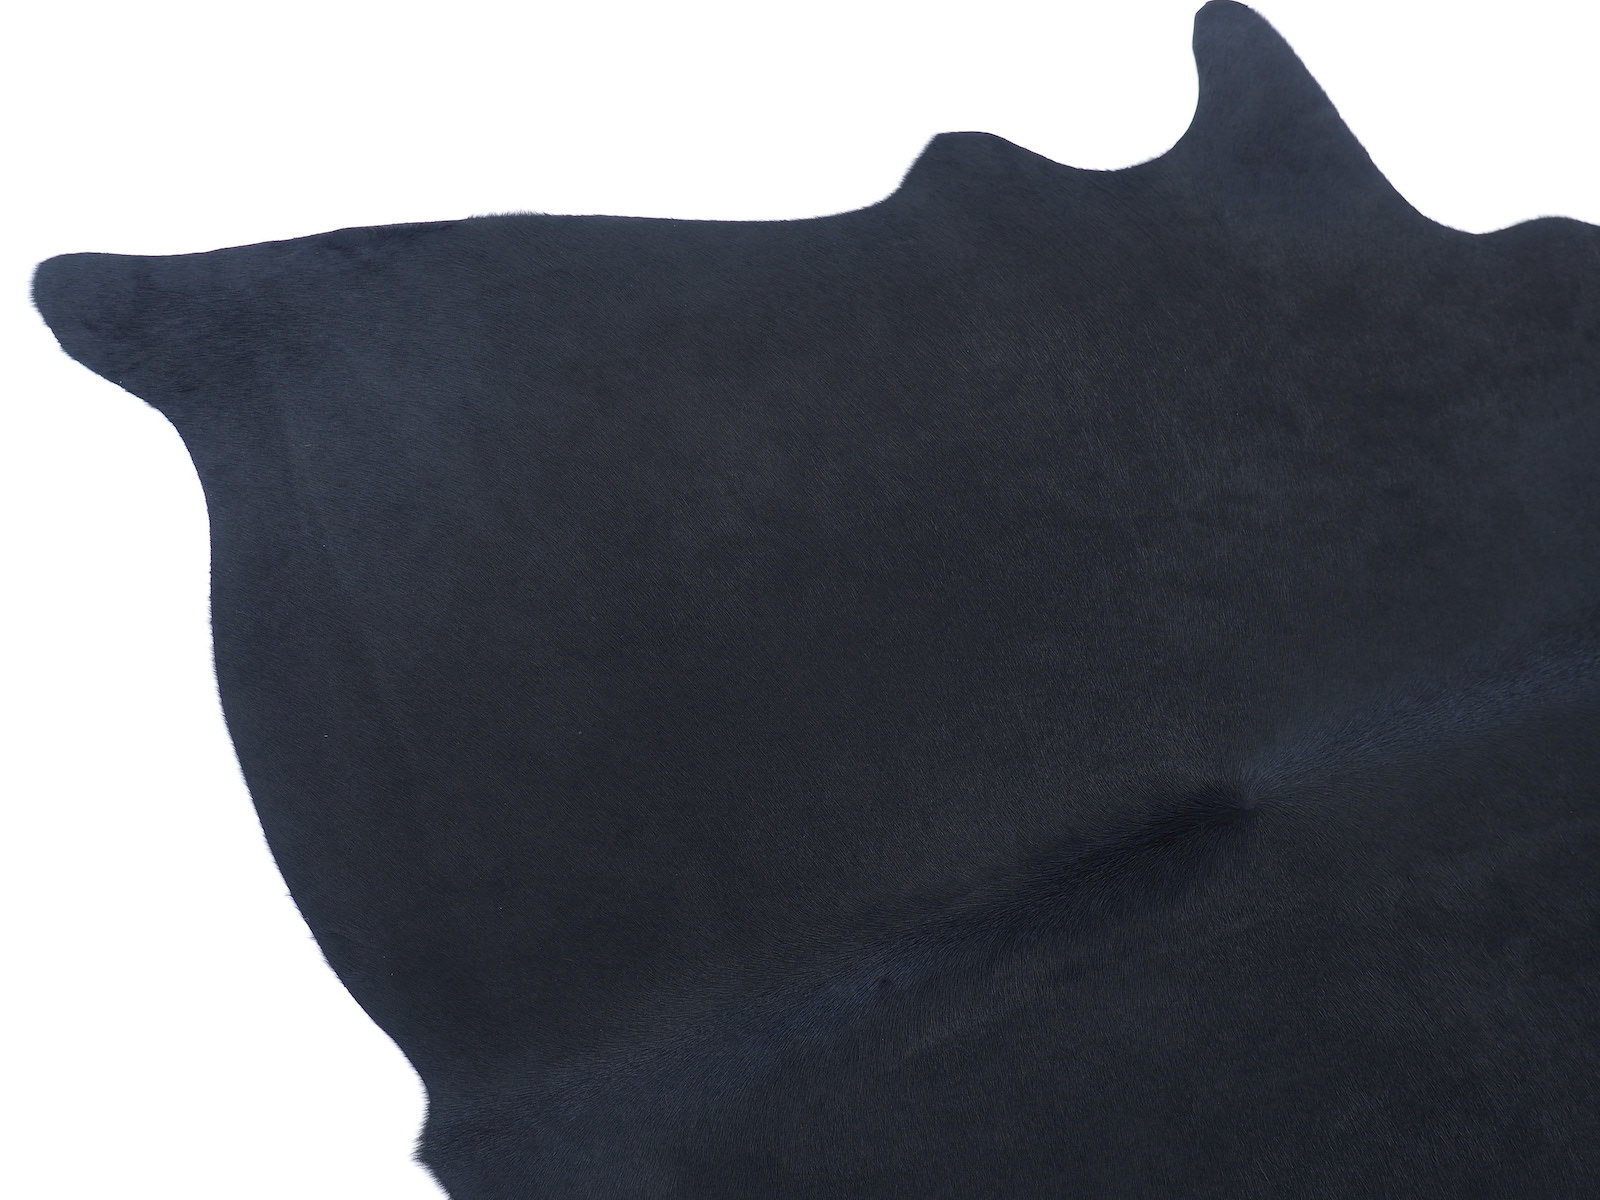 Шкура коровы натуральная окрашена в насыщенно черный арт.: 29057